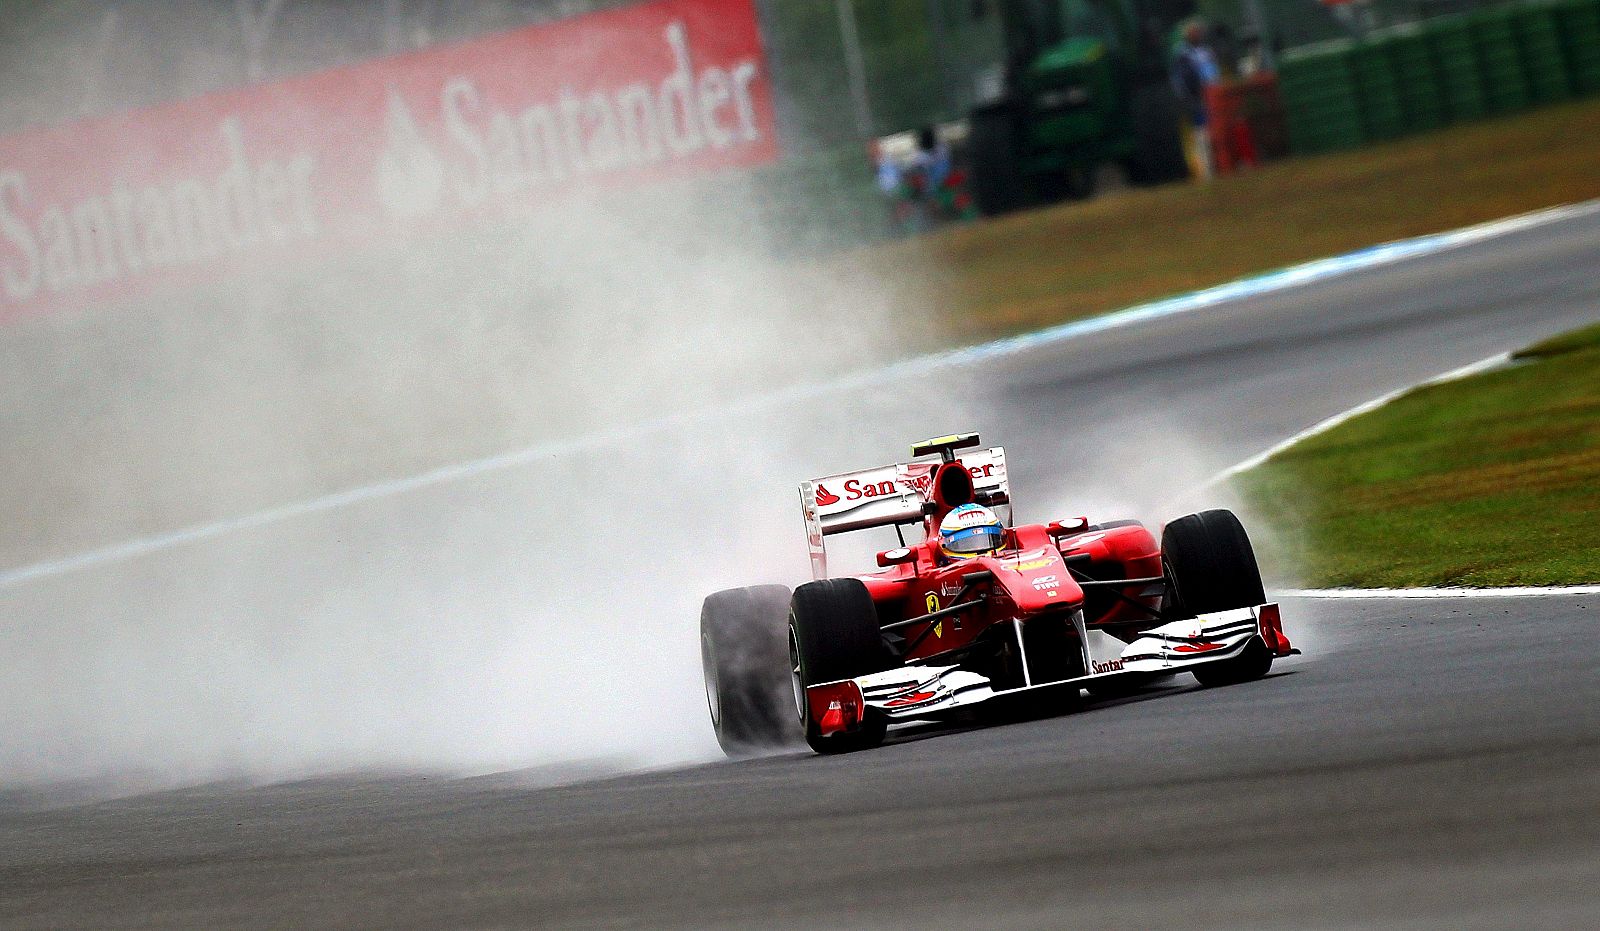 El piloto español de Fórmula Uno Fernando Alonso de Ferrari conduce su monoplaza en el circuito de Hockenheim.